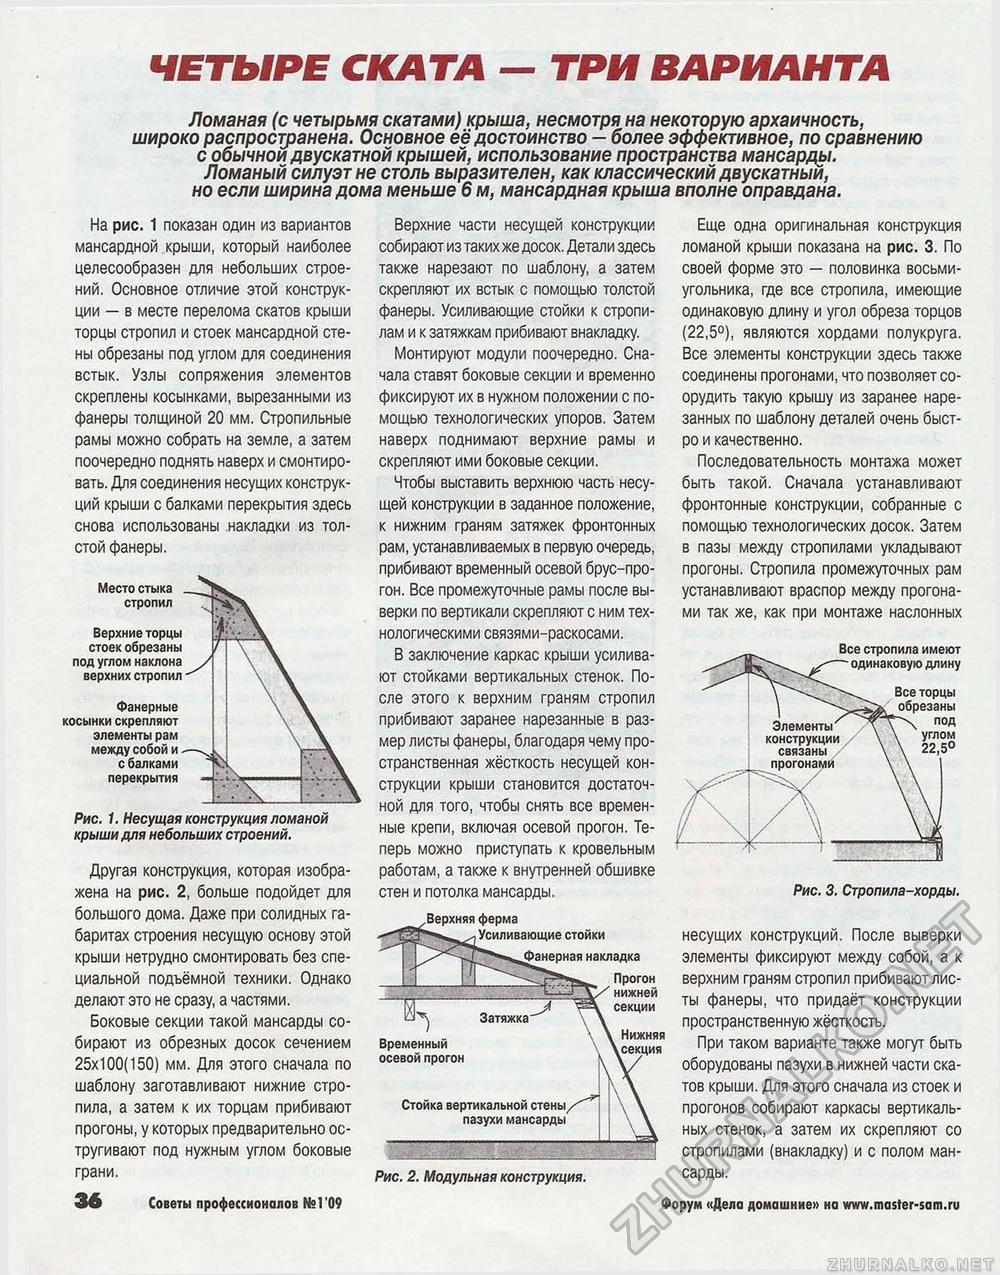 Советы профессионалов 2009-01, страница 36